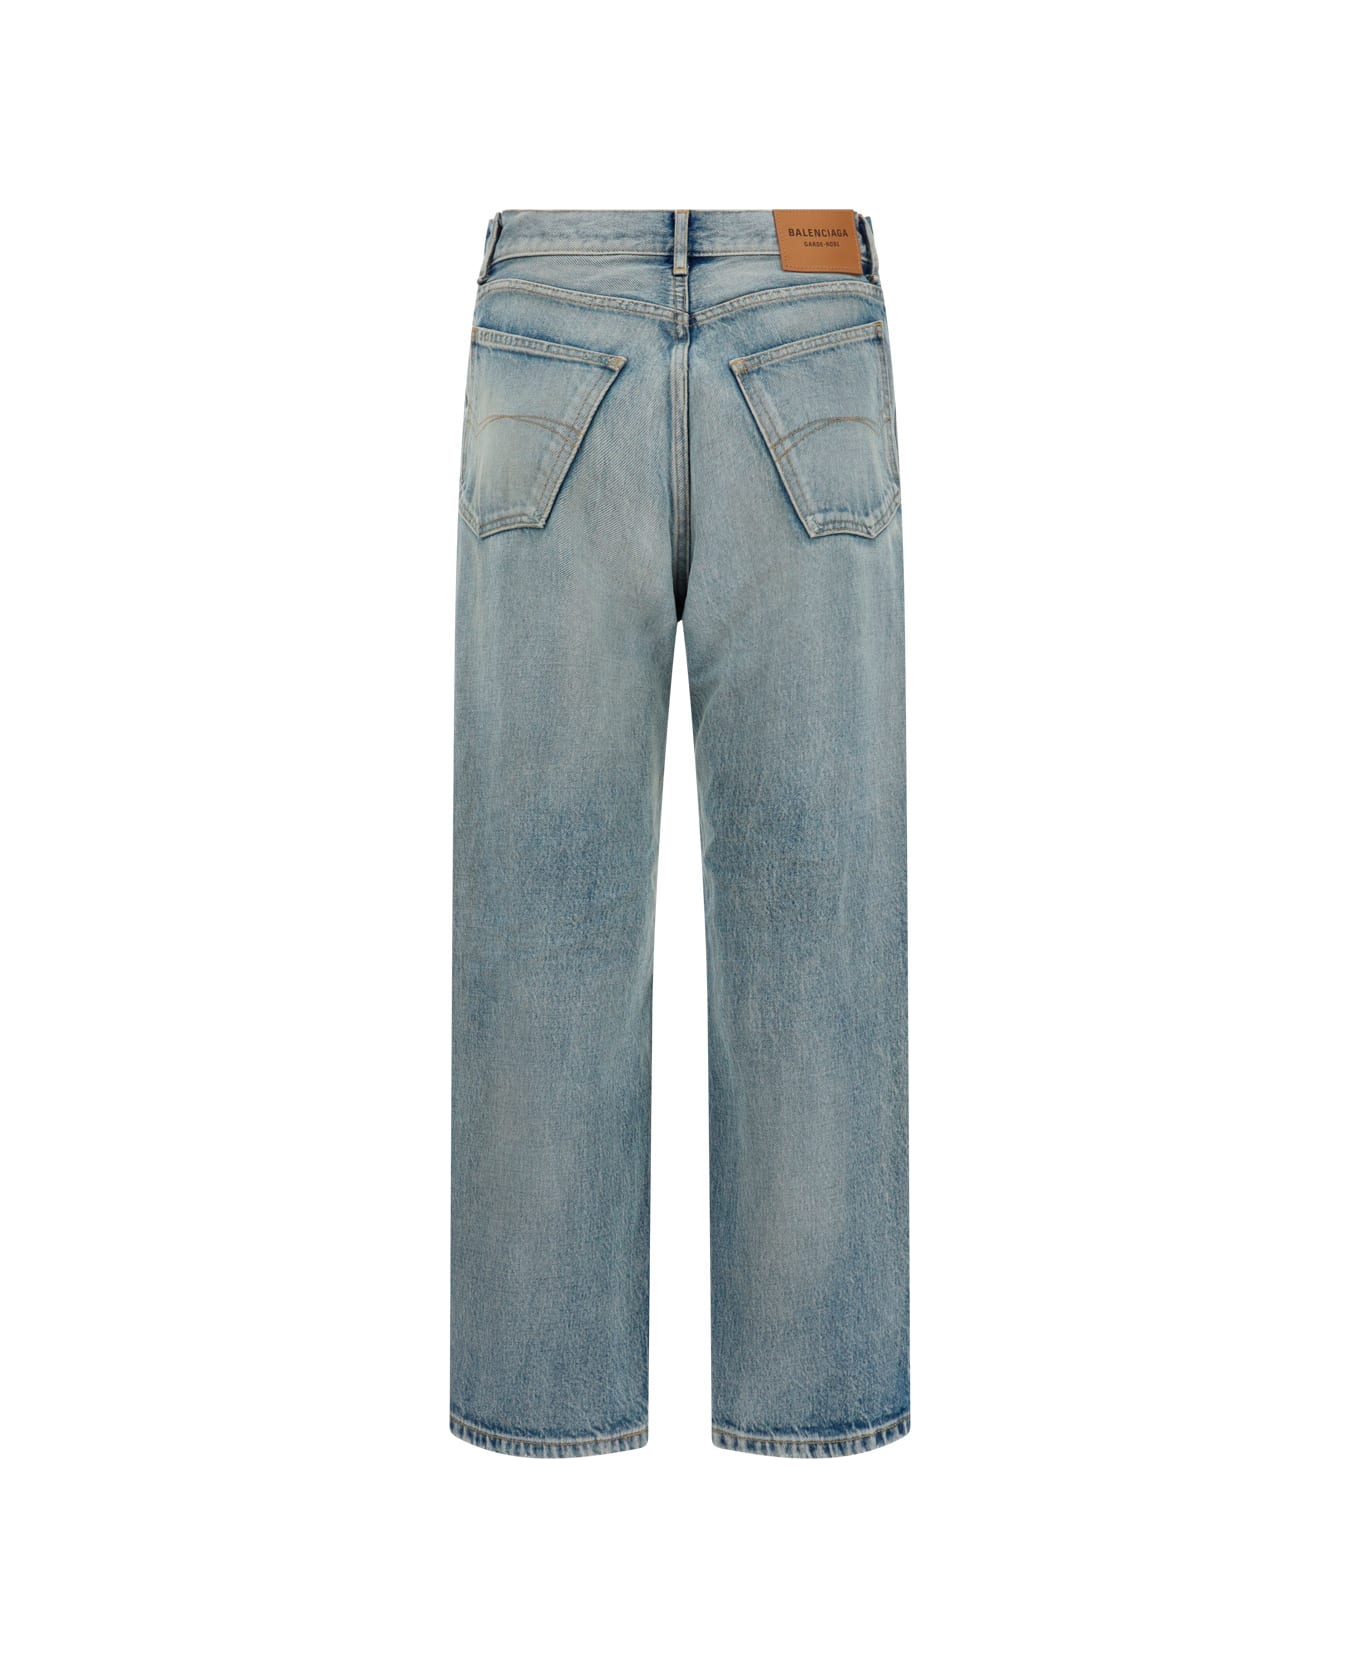 Balenciaga Jeans - 80's Clear Blue